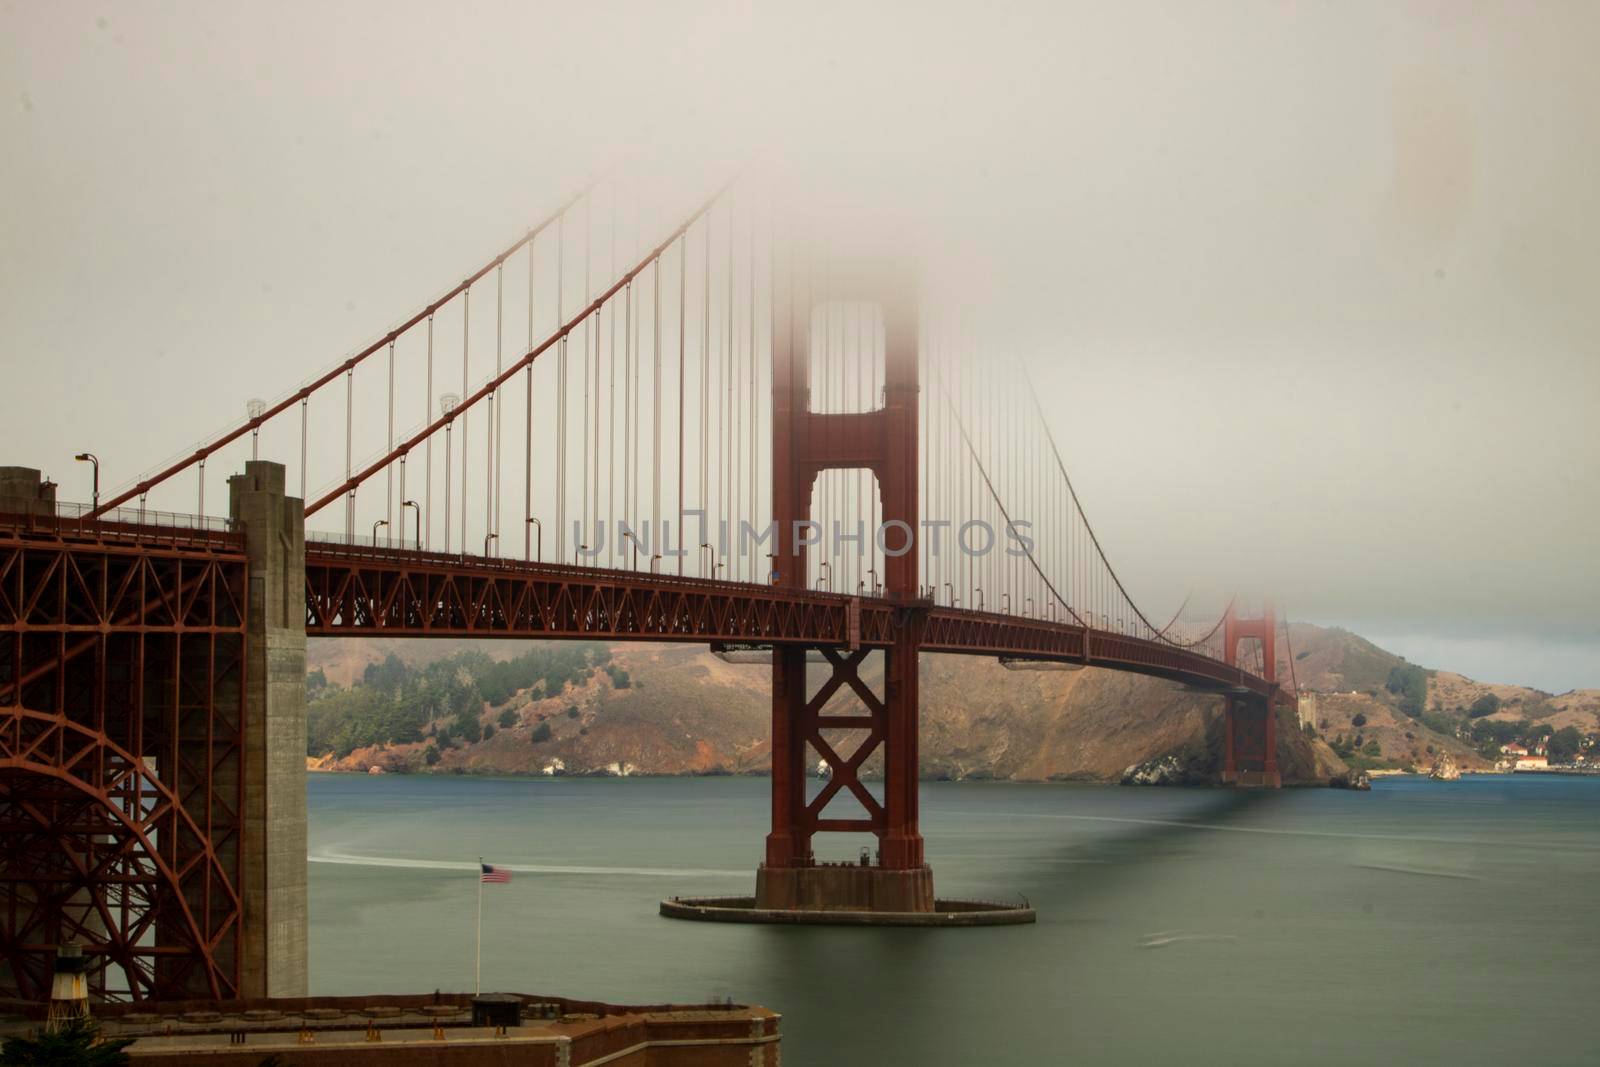 Golden Gate bridge in San Francisco in USA by ValentimePix